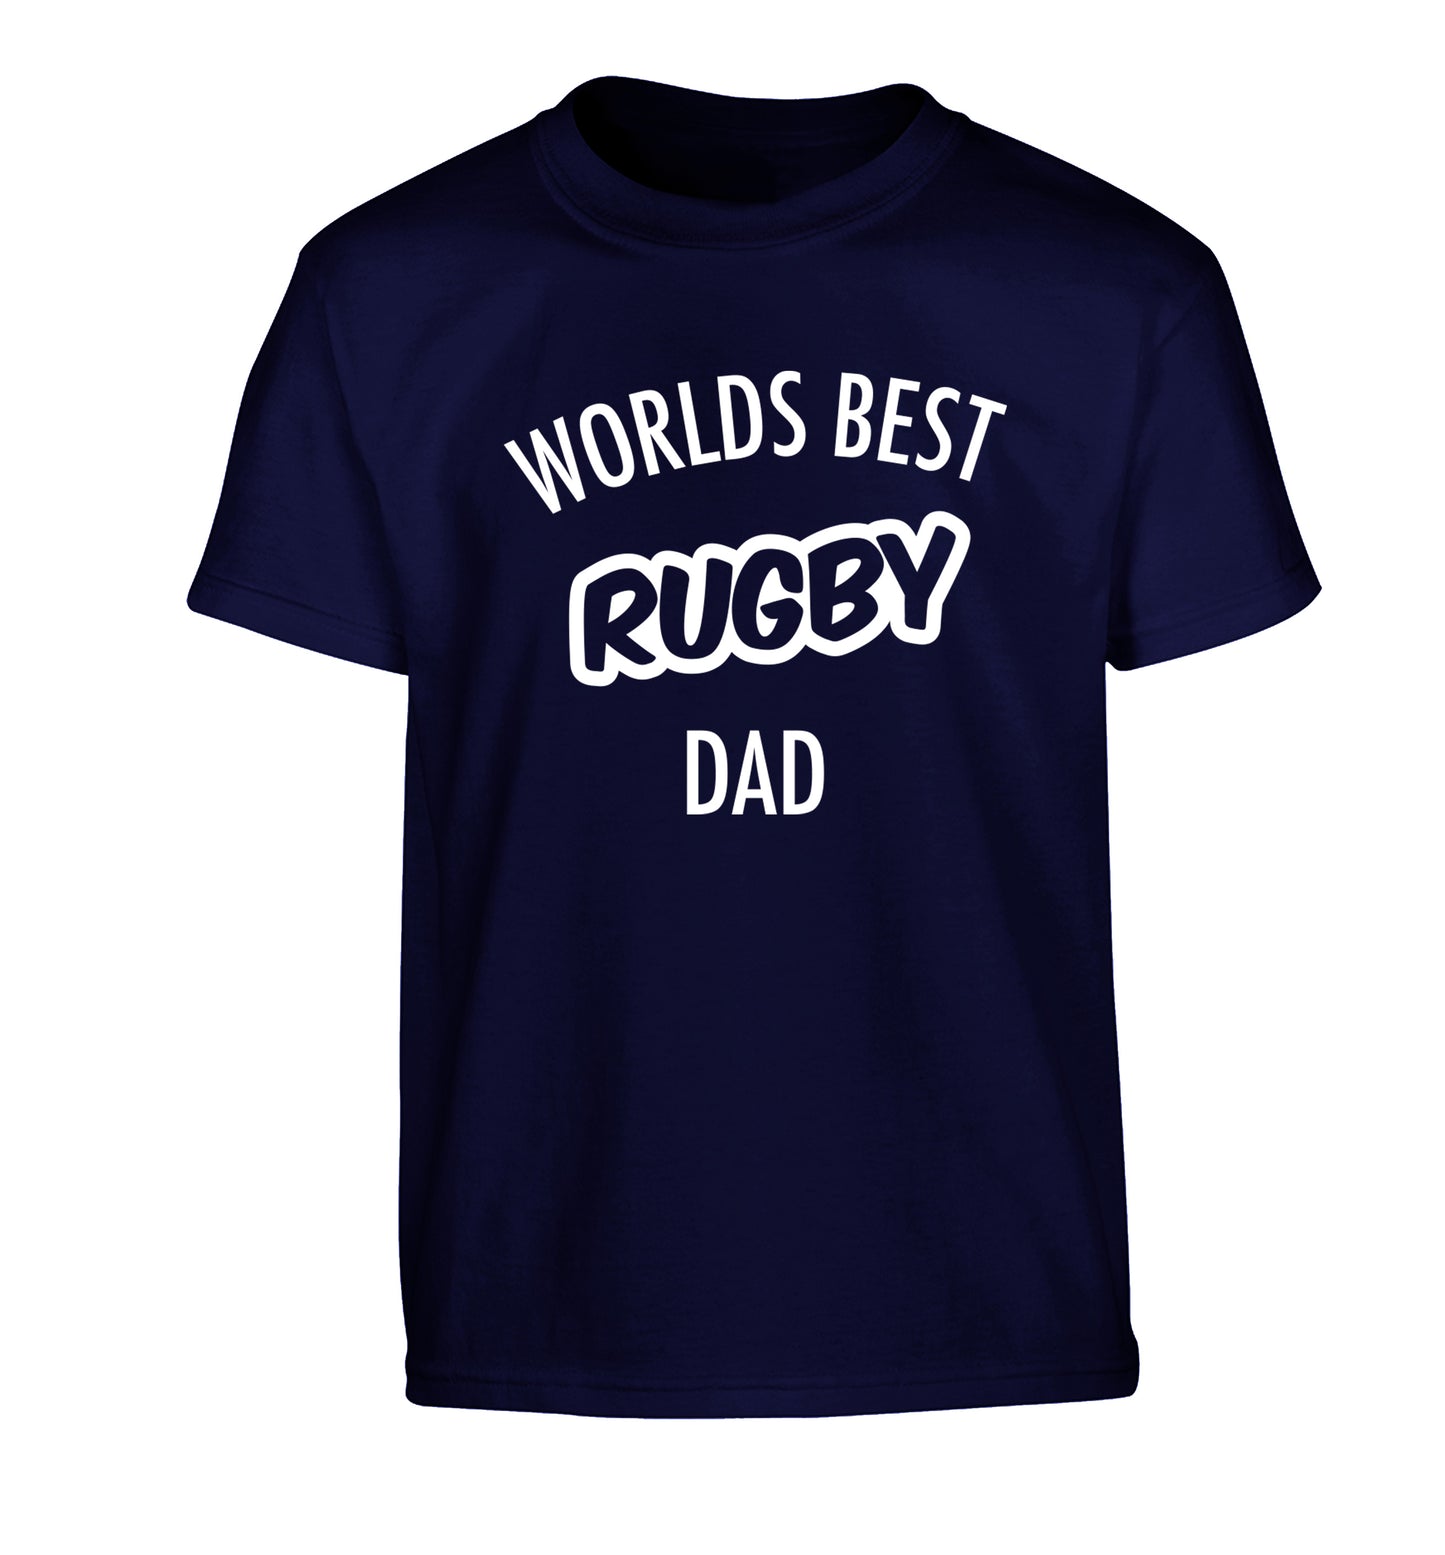 Worlds best rugby dad Children's navy Tshirt 12-13 Years